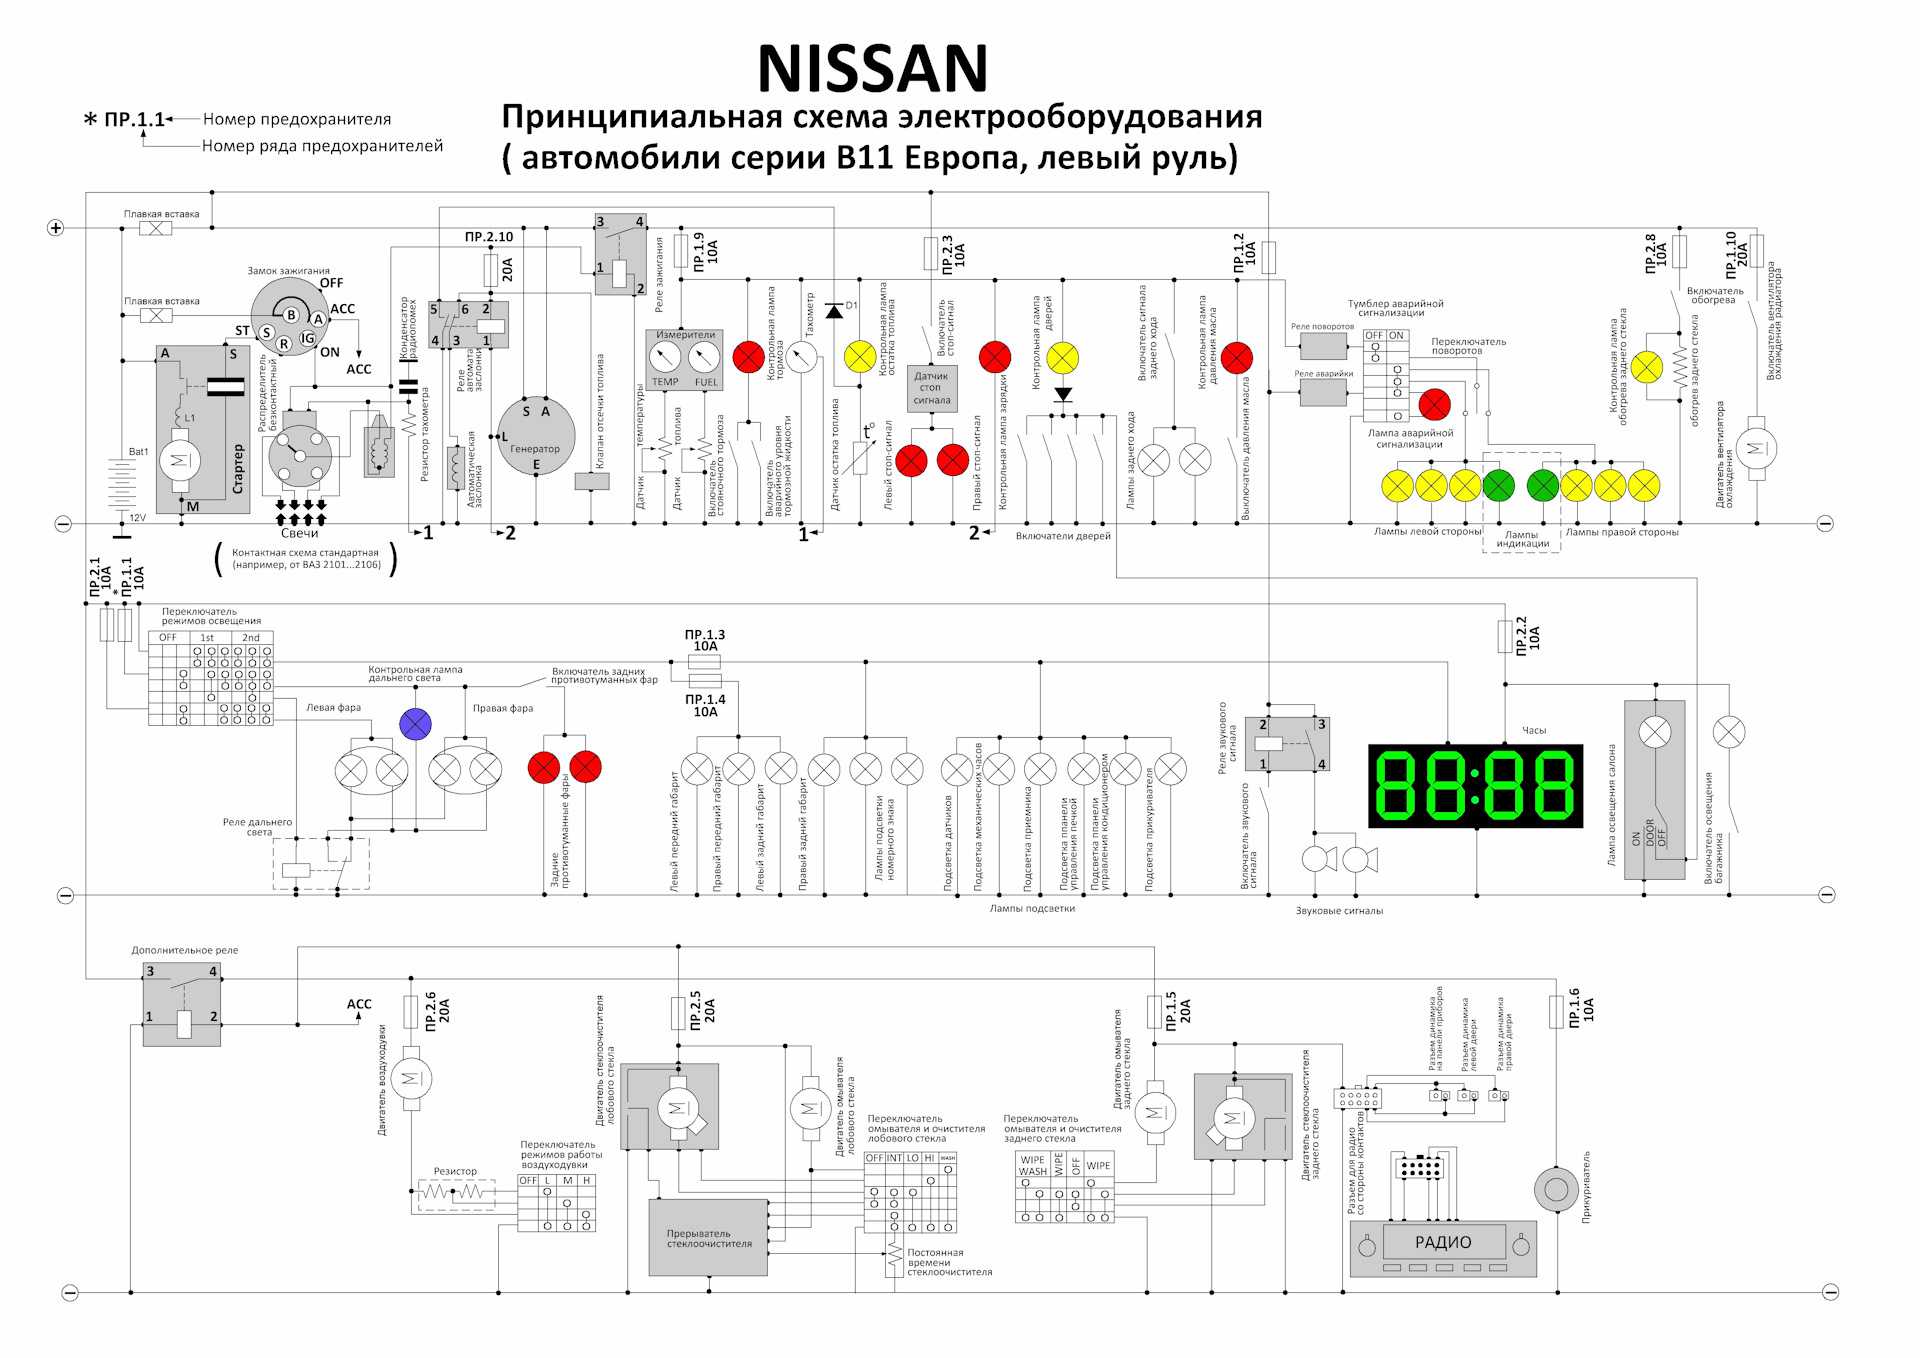 Ремонт ниссан санни : бензиновый двигатель объемом 1,4 и 1,6 литра nissan sunny